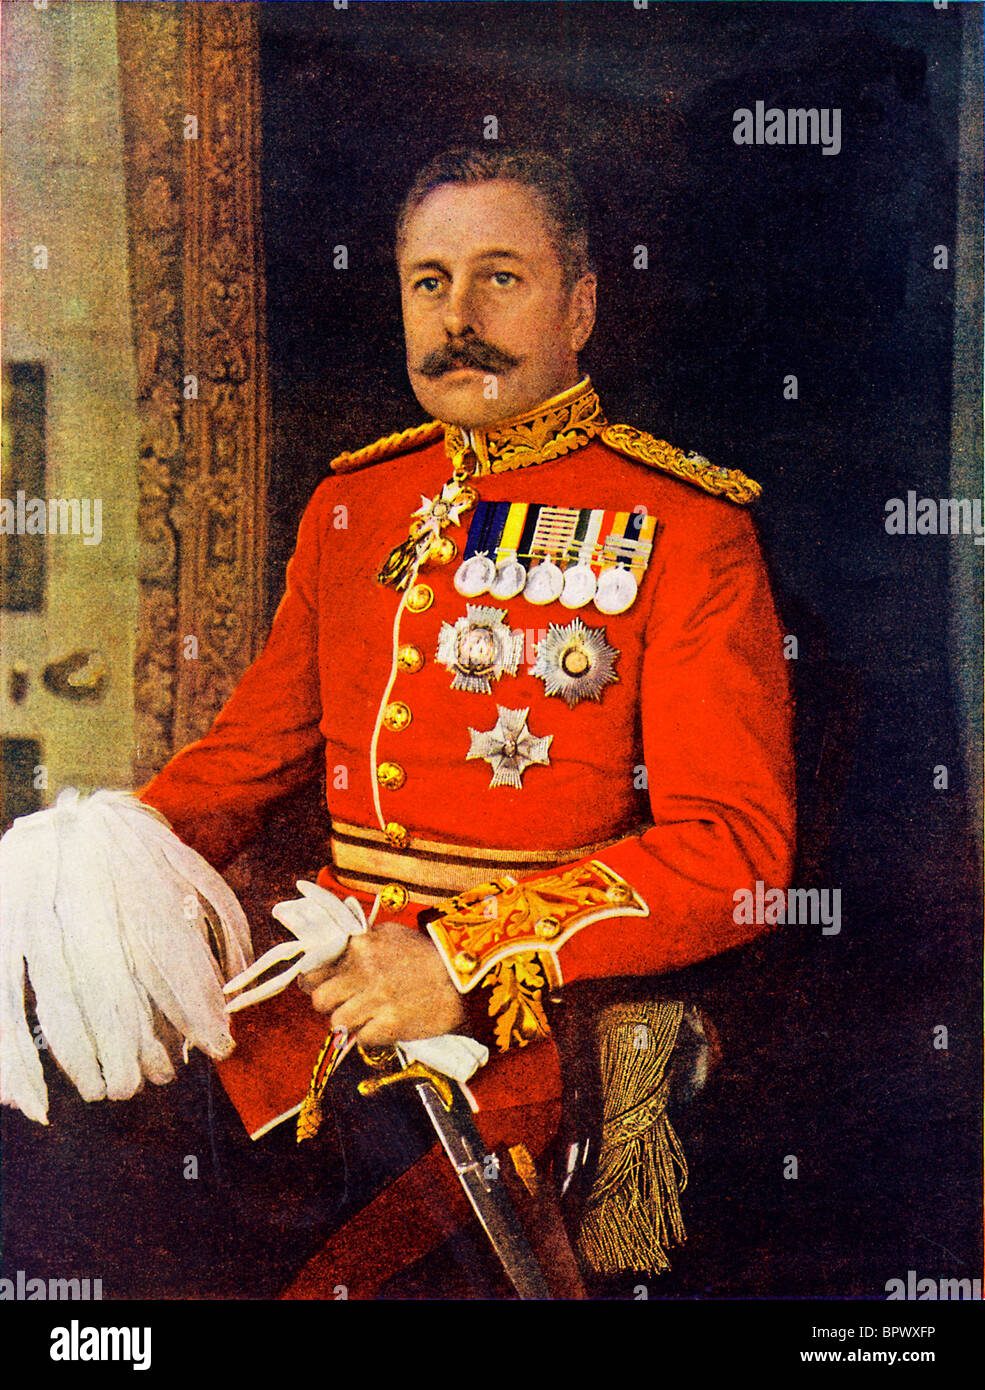 Le général Sir Douglas Haig, 1914 portrait du commandant de la 1re Corp de la BEF en France au début de la Grande Guerre Banque D'Images